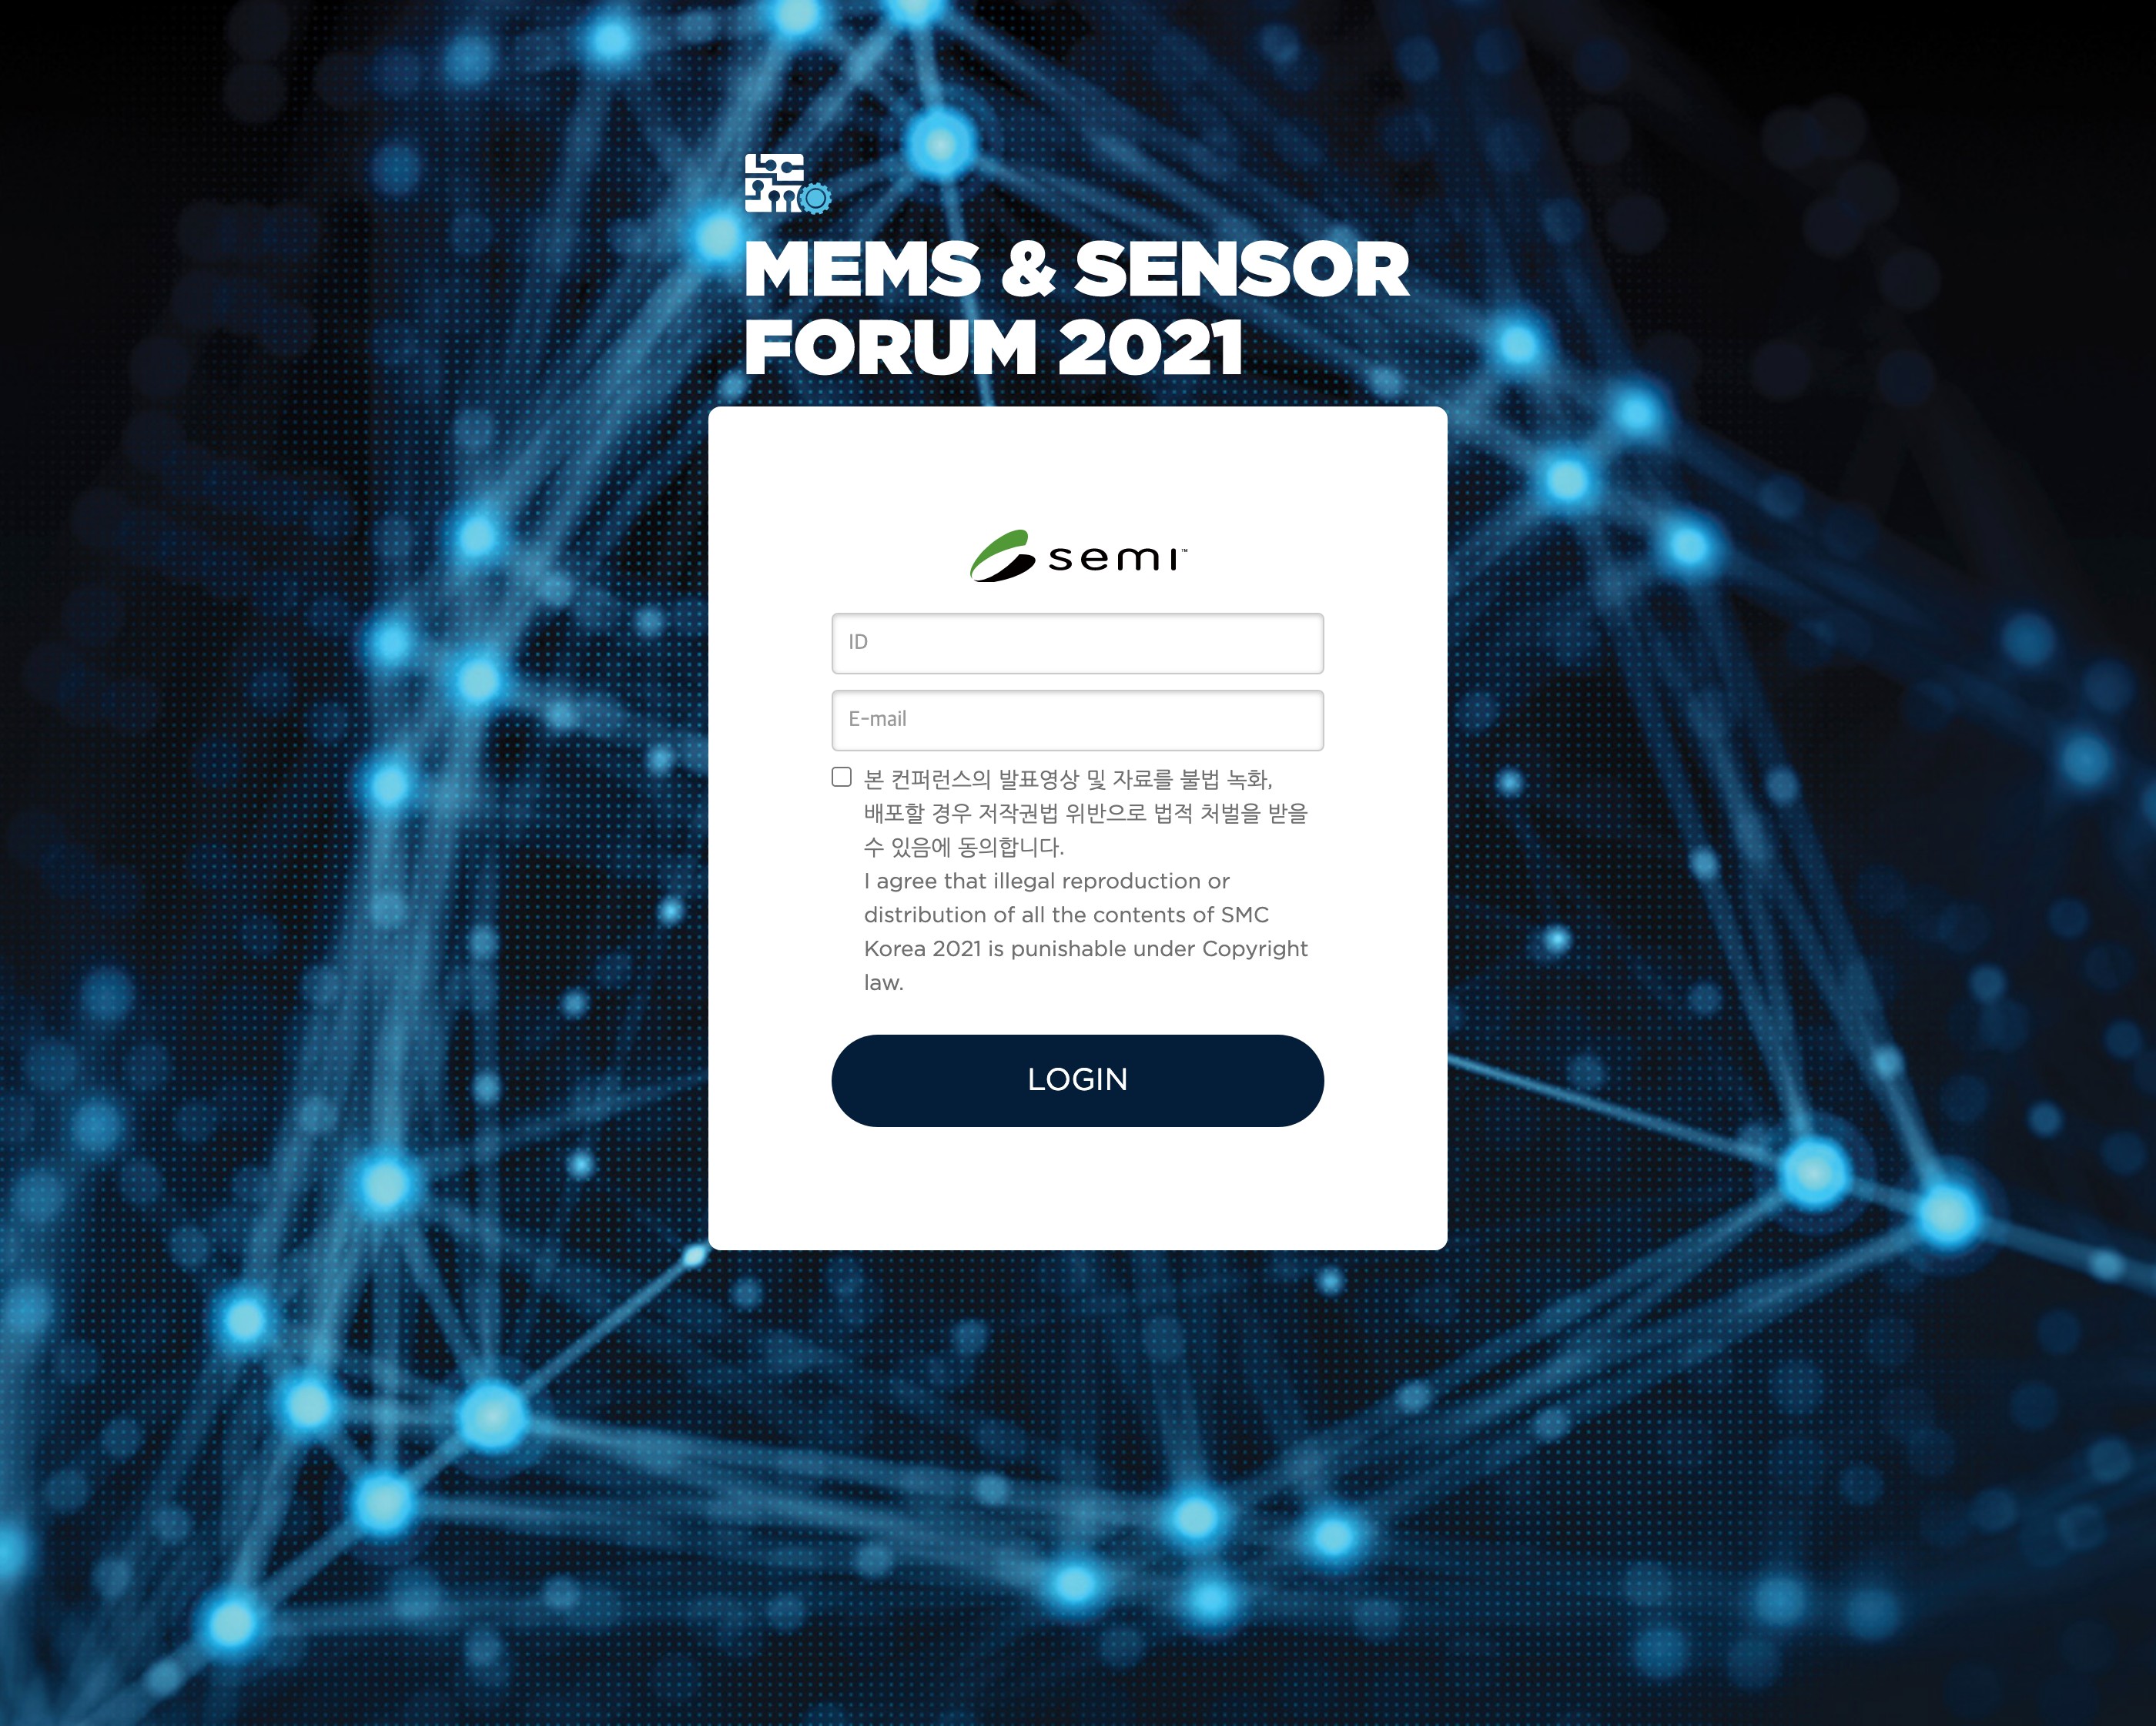 MEMS_&_Sensor_Forum_2021-2021-06-10_13.34.46.jpg